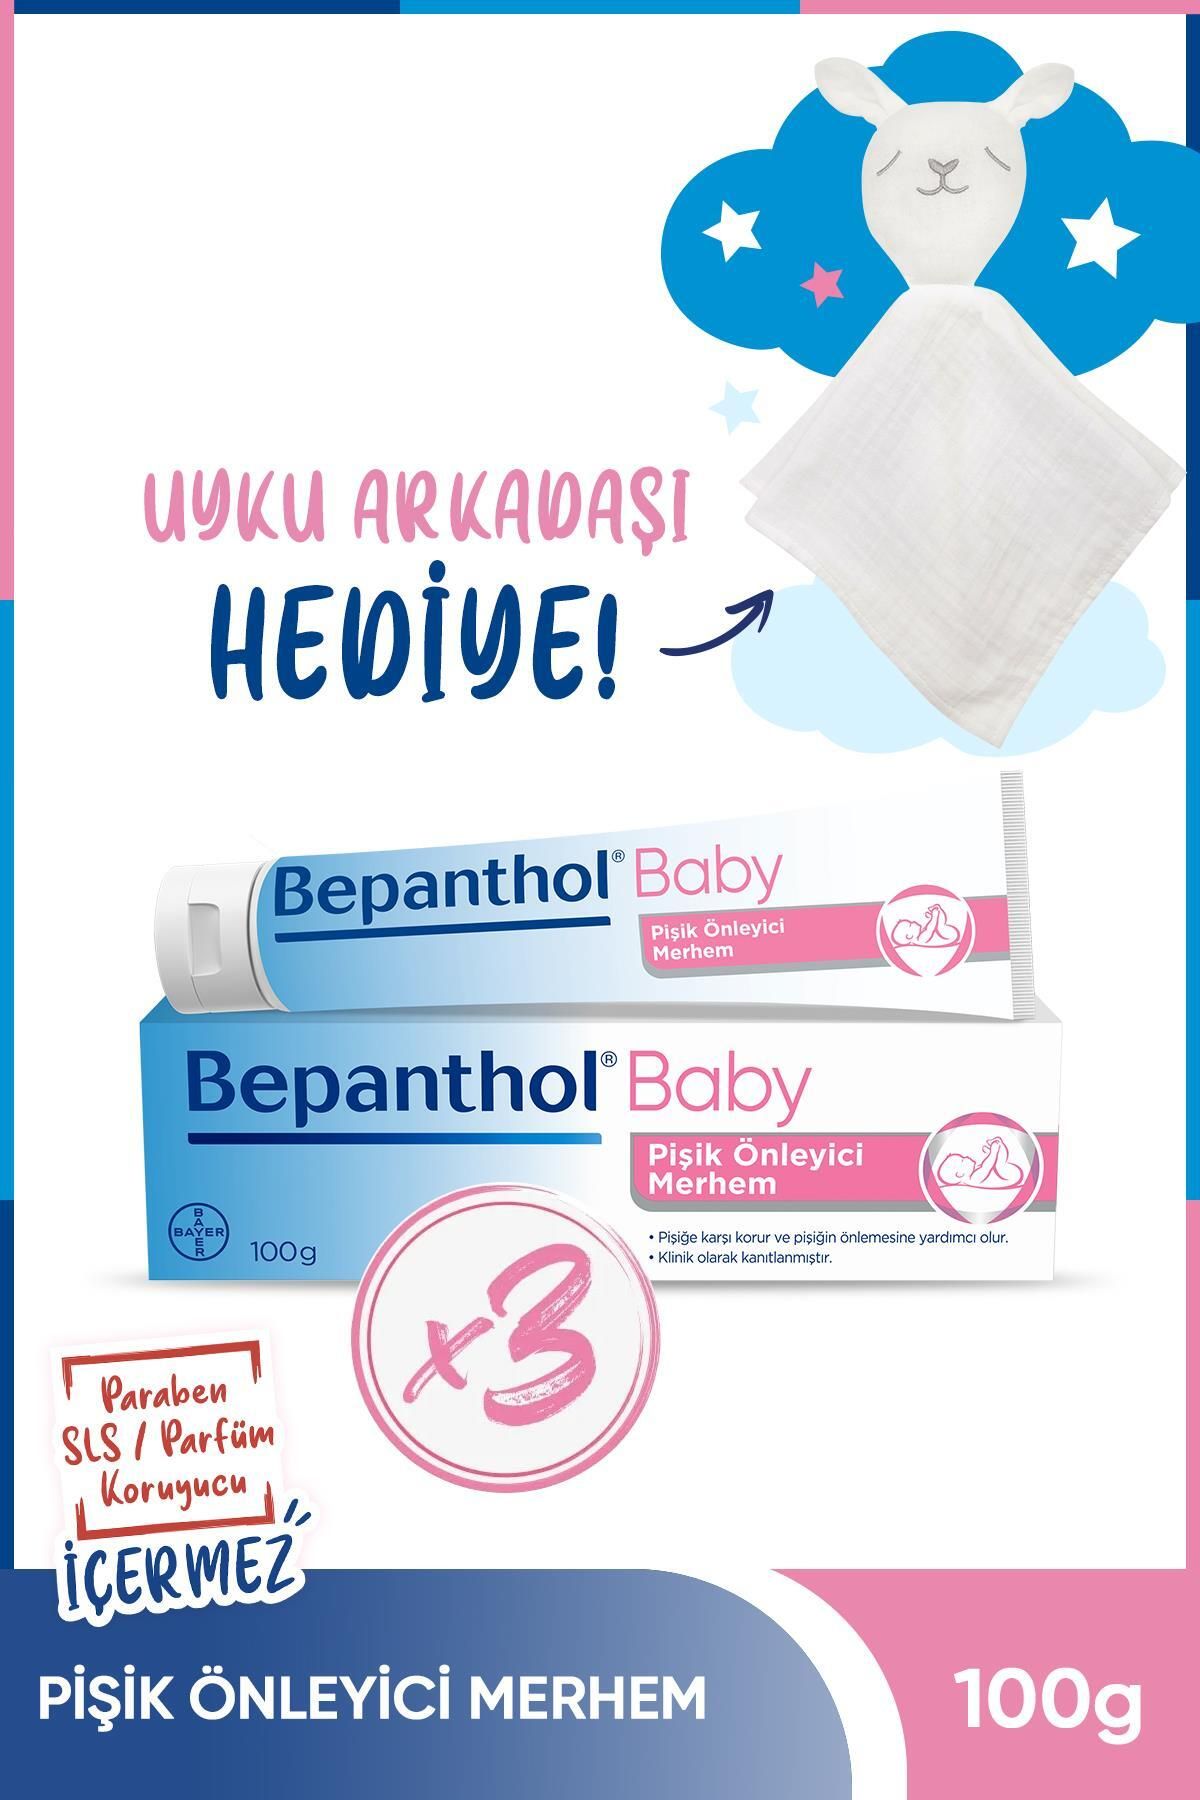 Bepanthol Baby Pişik Önleyici Merhem 100 G 3’lü Paket Uyku Arkadaşı Hediyeli